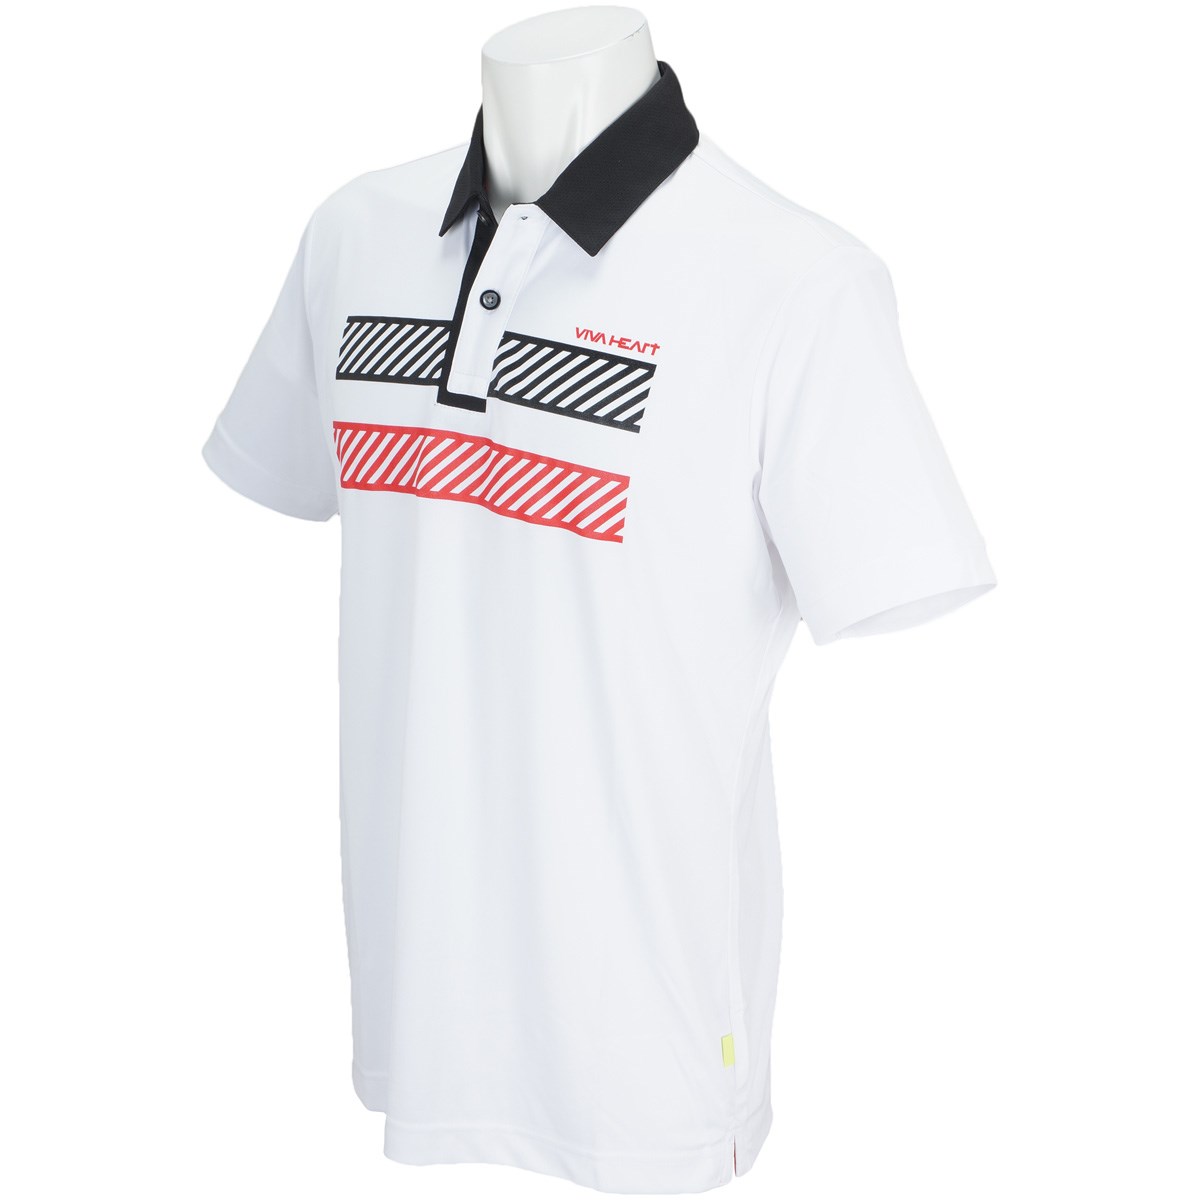  [アウトレット] [在庫限りのお買い得商品] ビバハート DRYジャージ バックロゴ半袖ポロシャツ ゴルフウェア